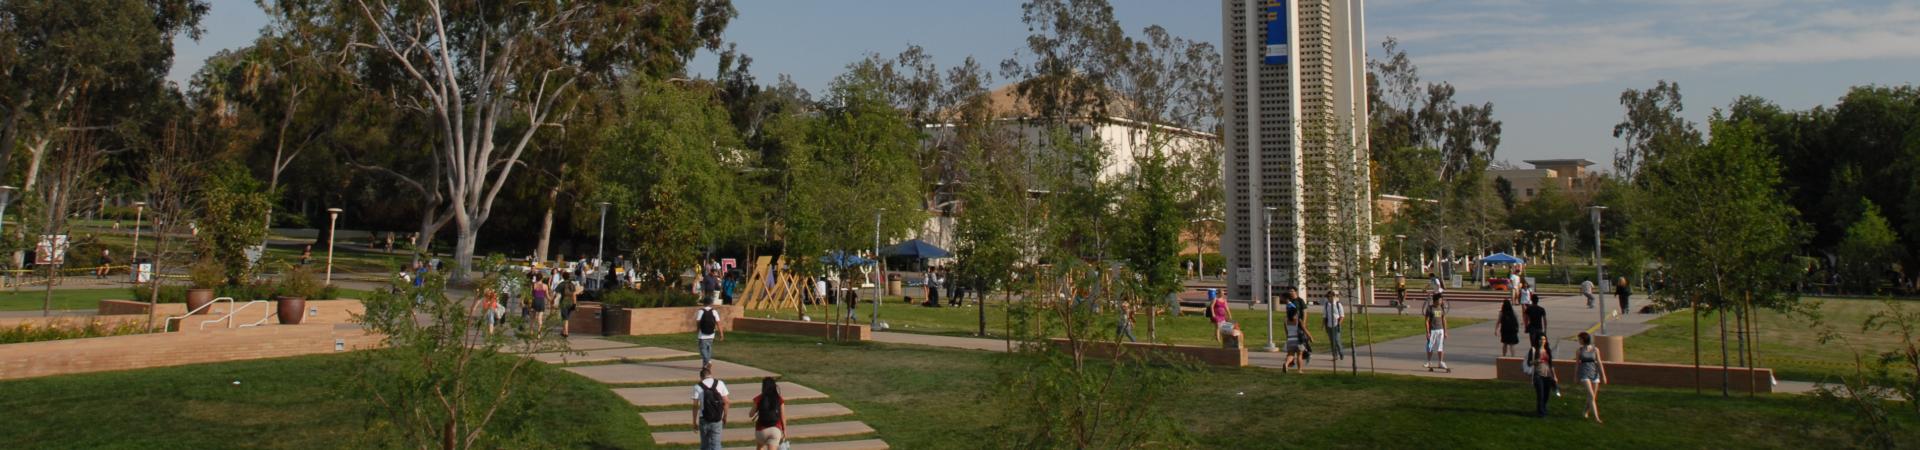 Campus, Image